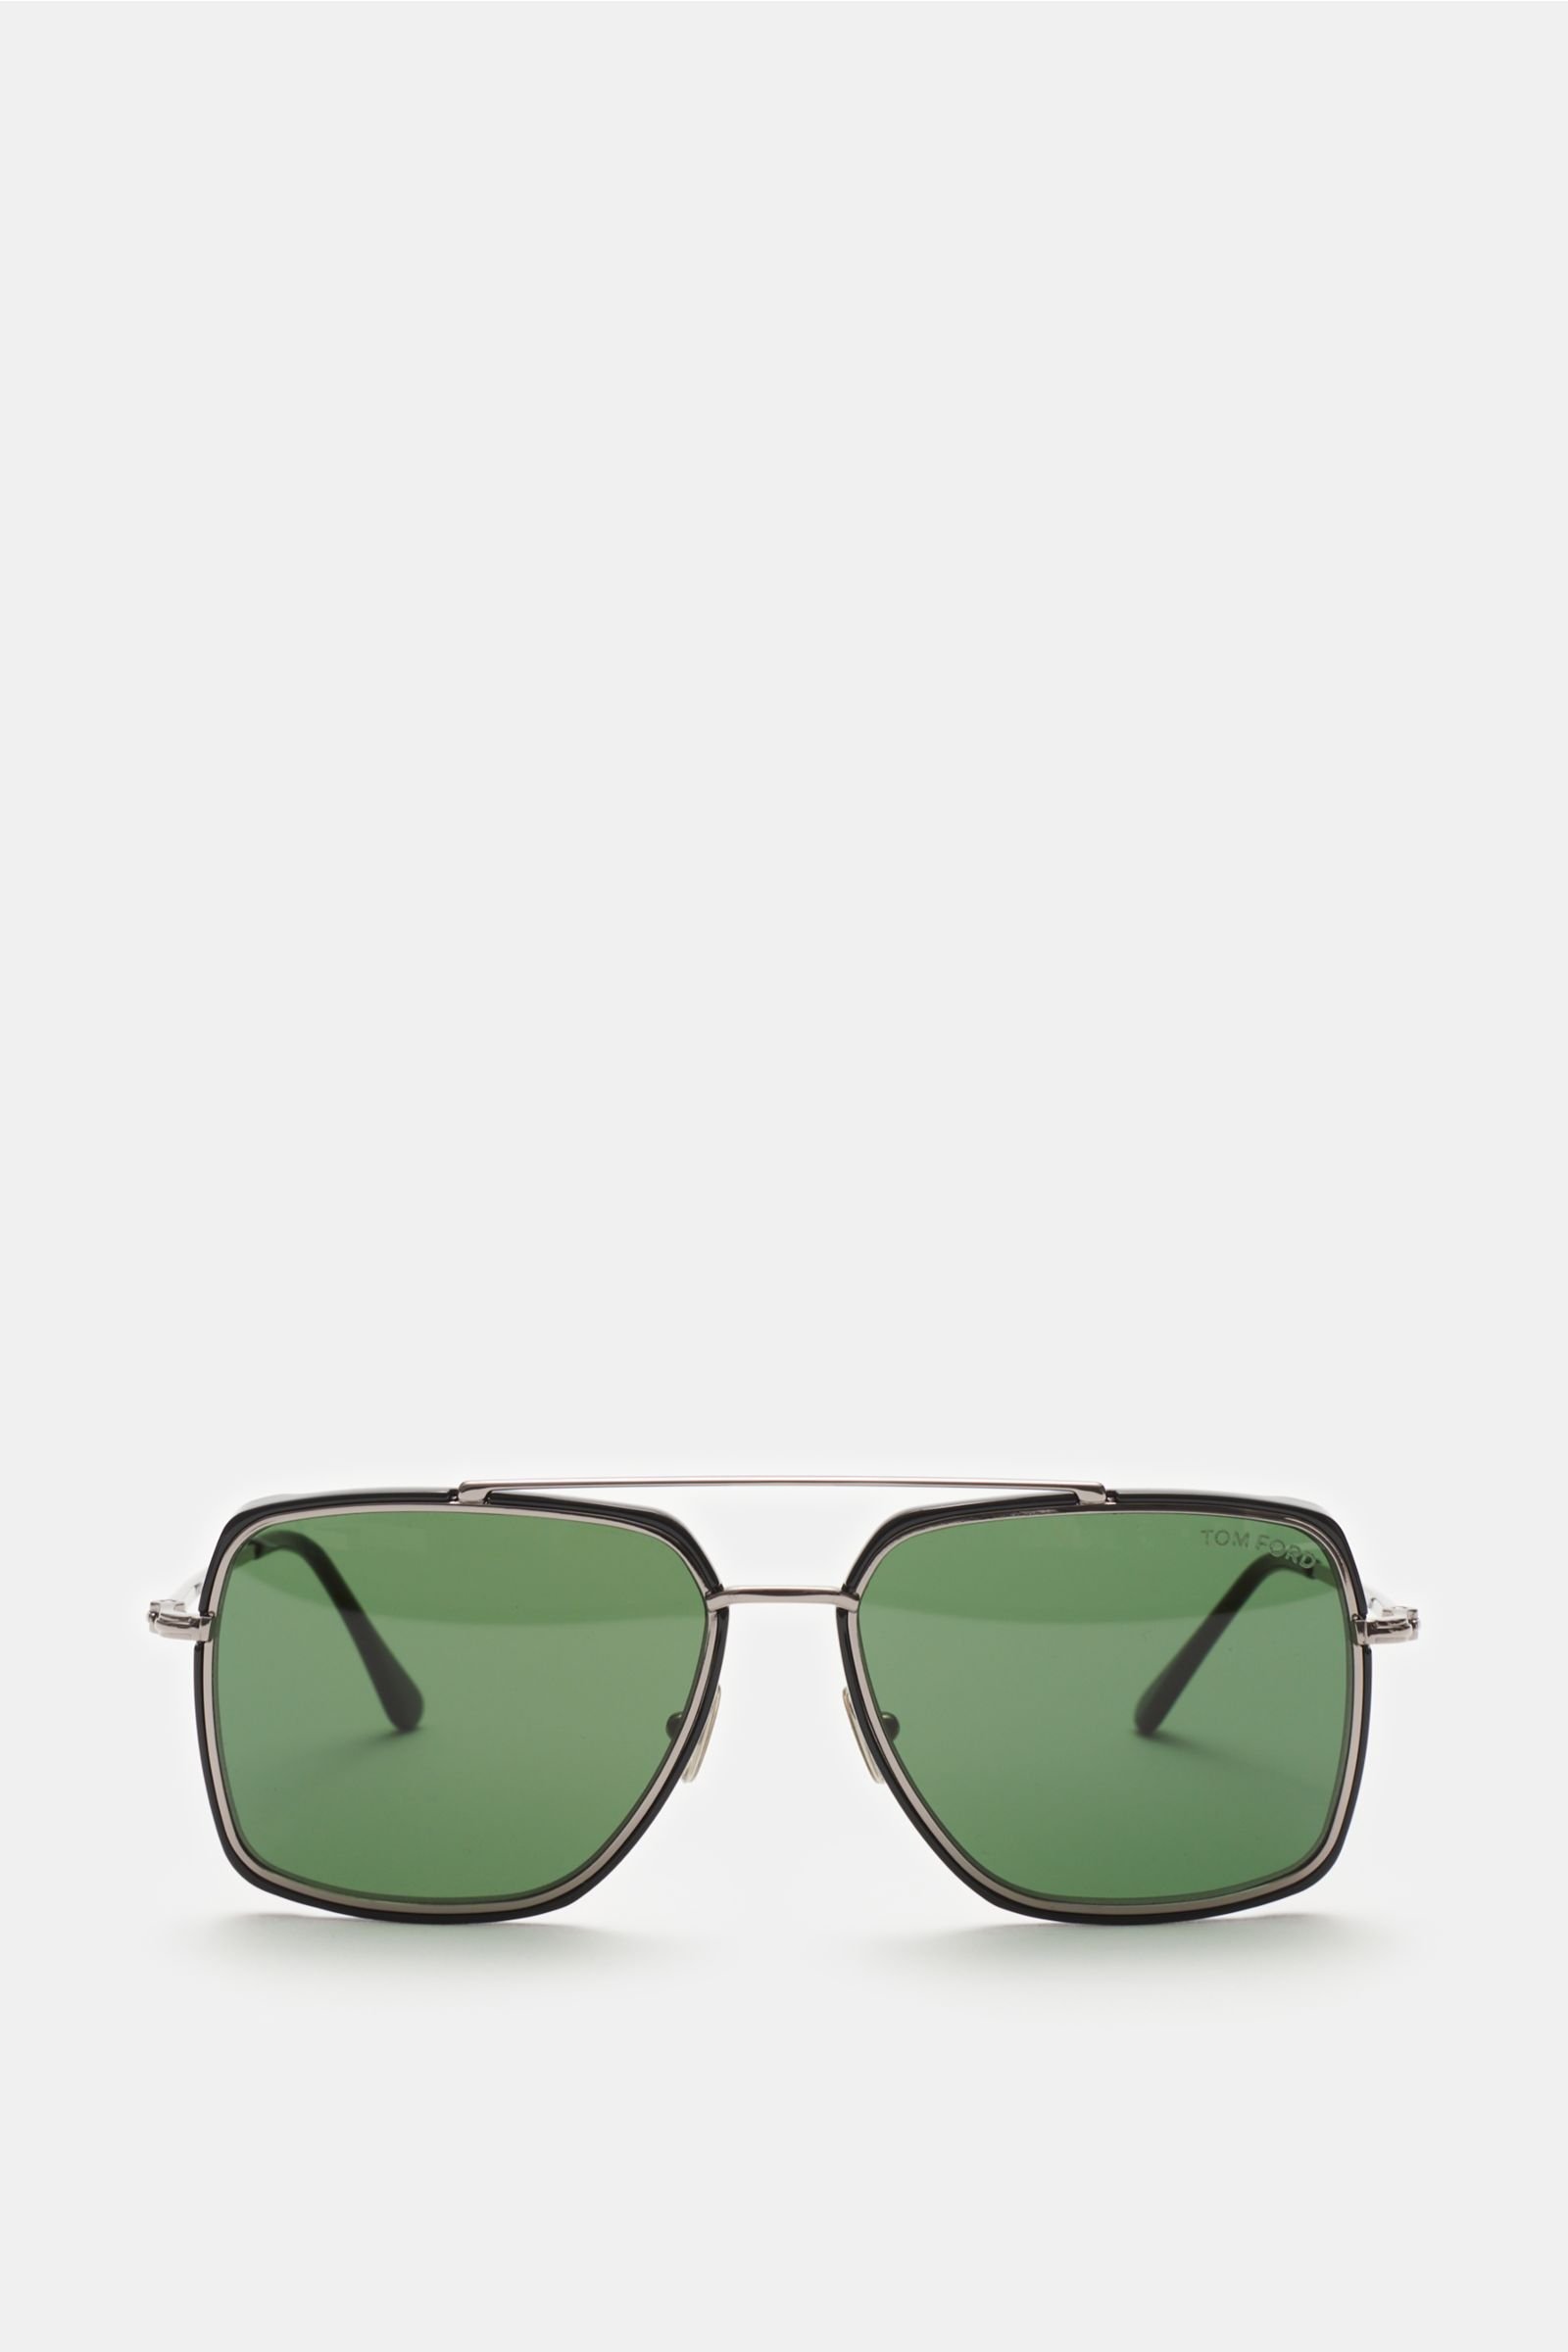 Sonnenbrille 'Lionel' silber/grün